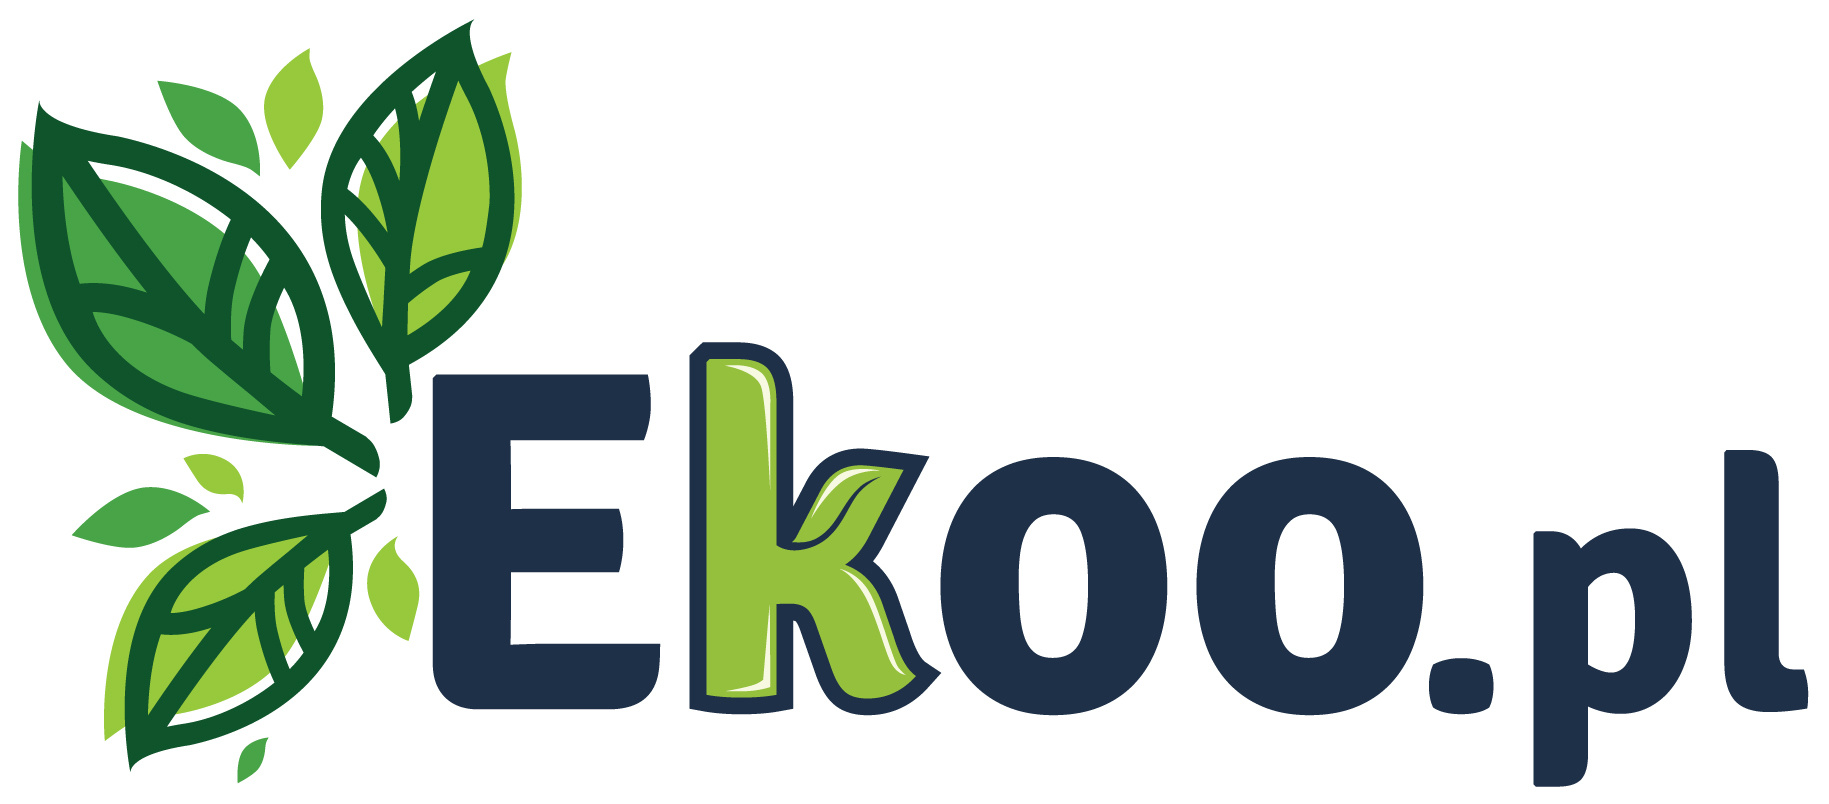 EKOO_logotyp_pl.jpg